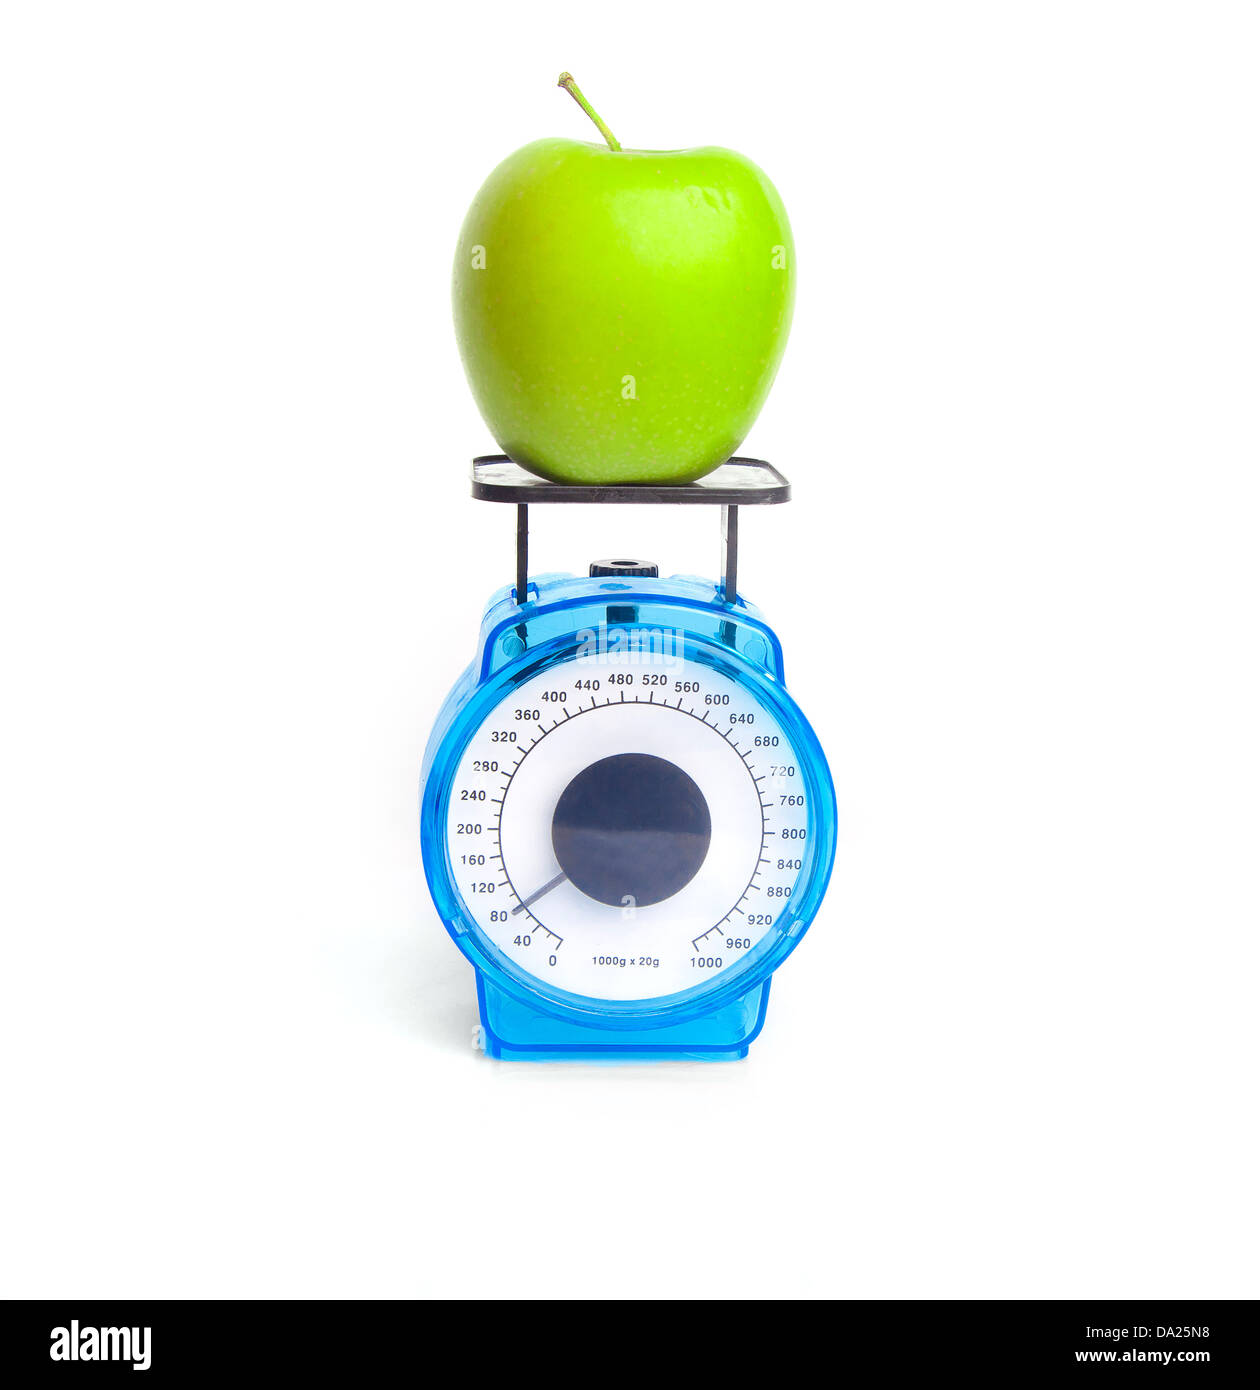 Grüner Apfel auf Skala: Gewicht Steuerungskonzept Stockfoto